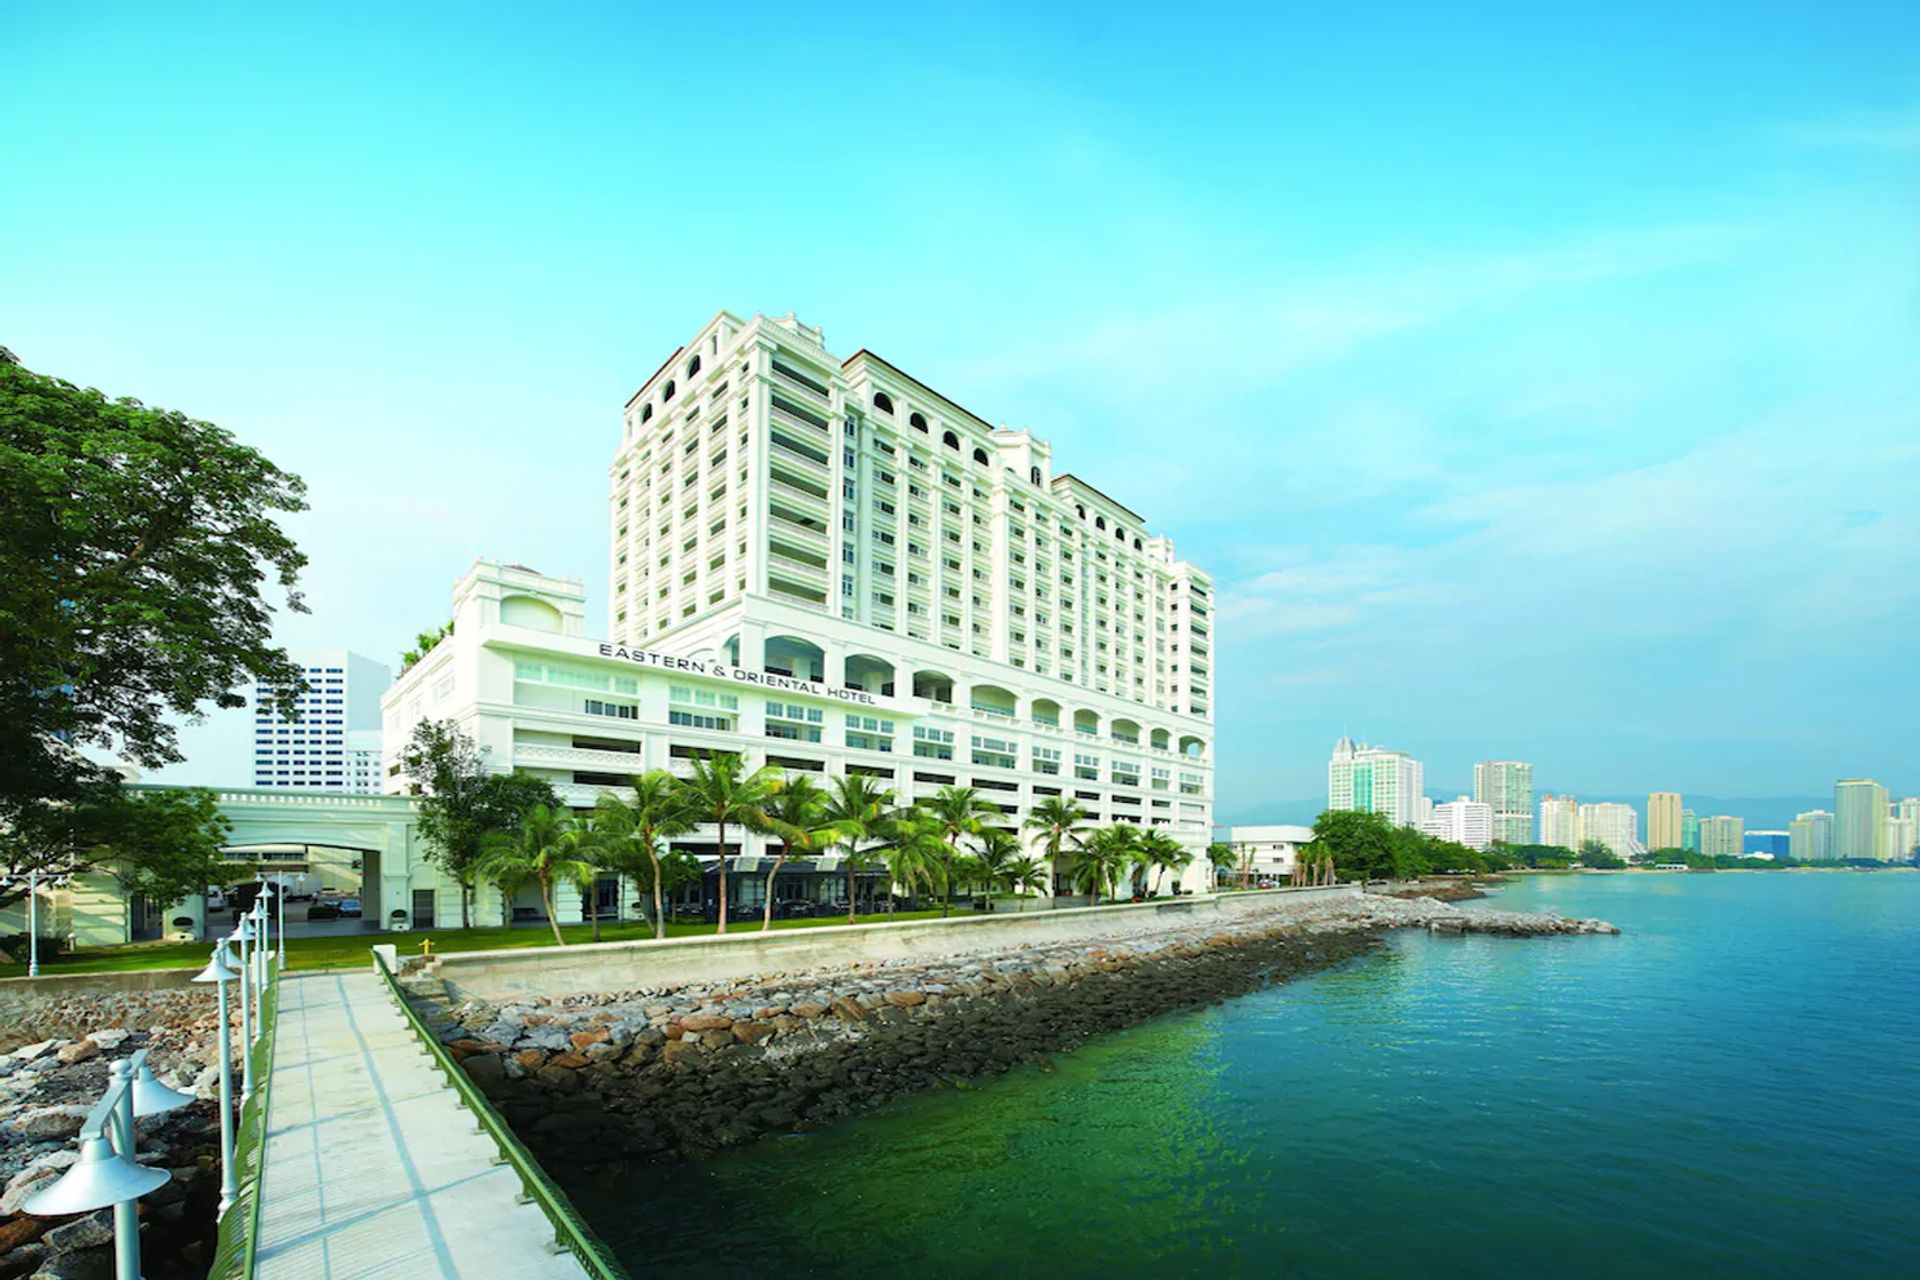 Khách sạn Eastern & Oriental Hotel có hướng view biển độc nhất ở thủ phủ George Town